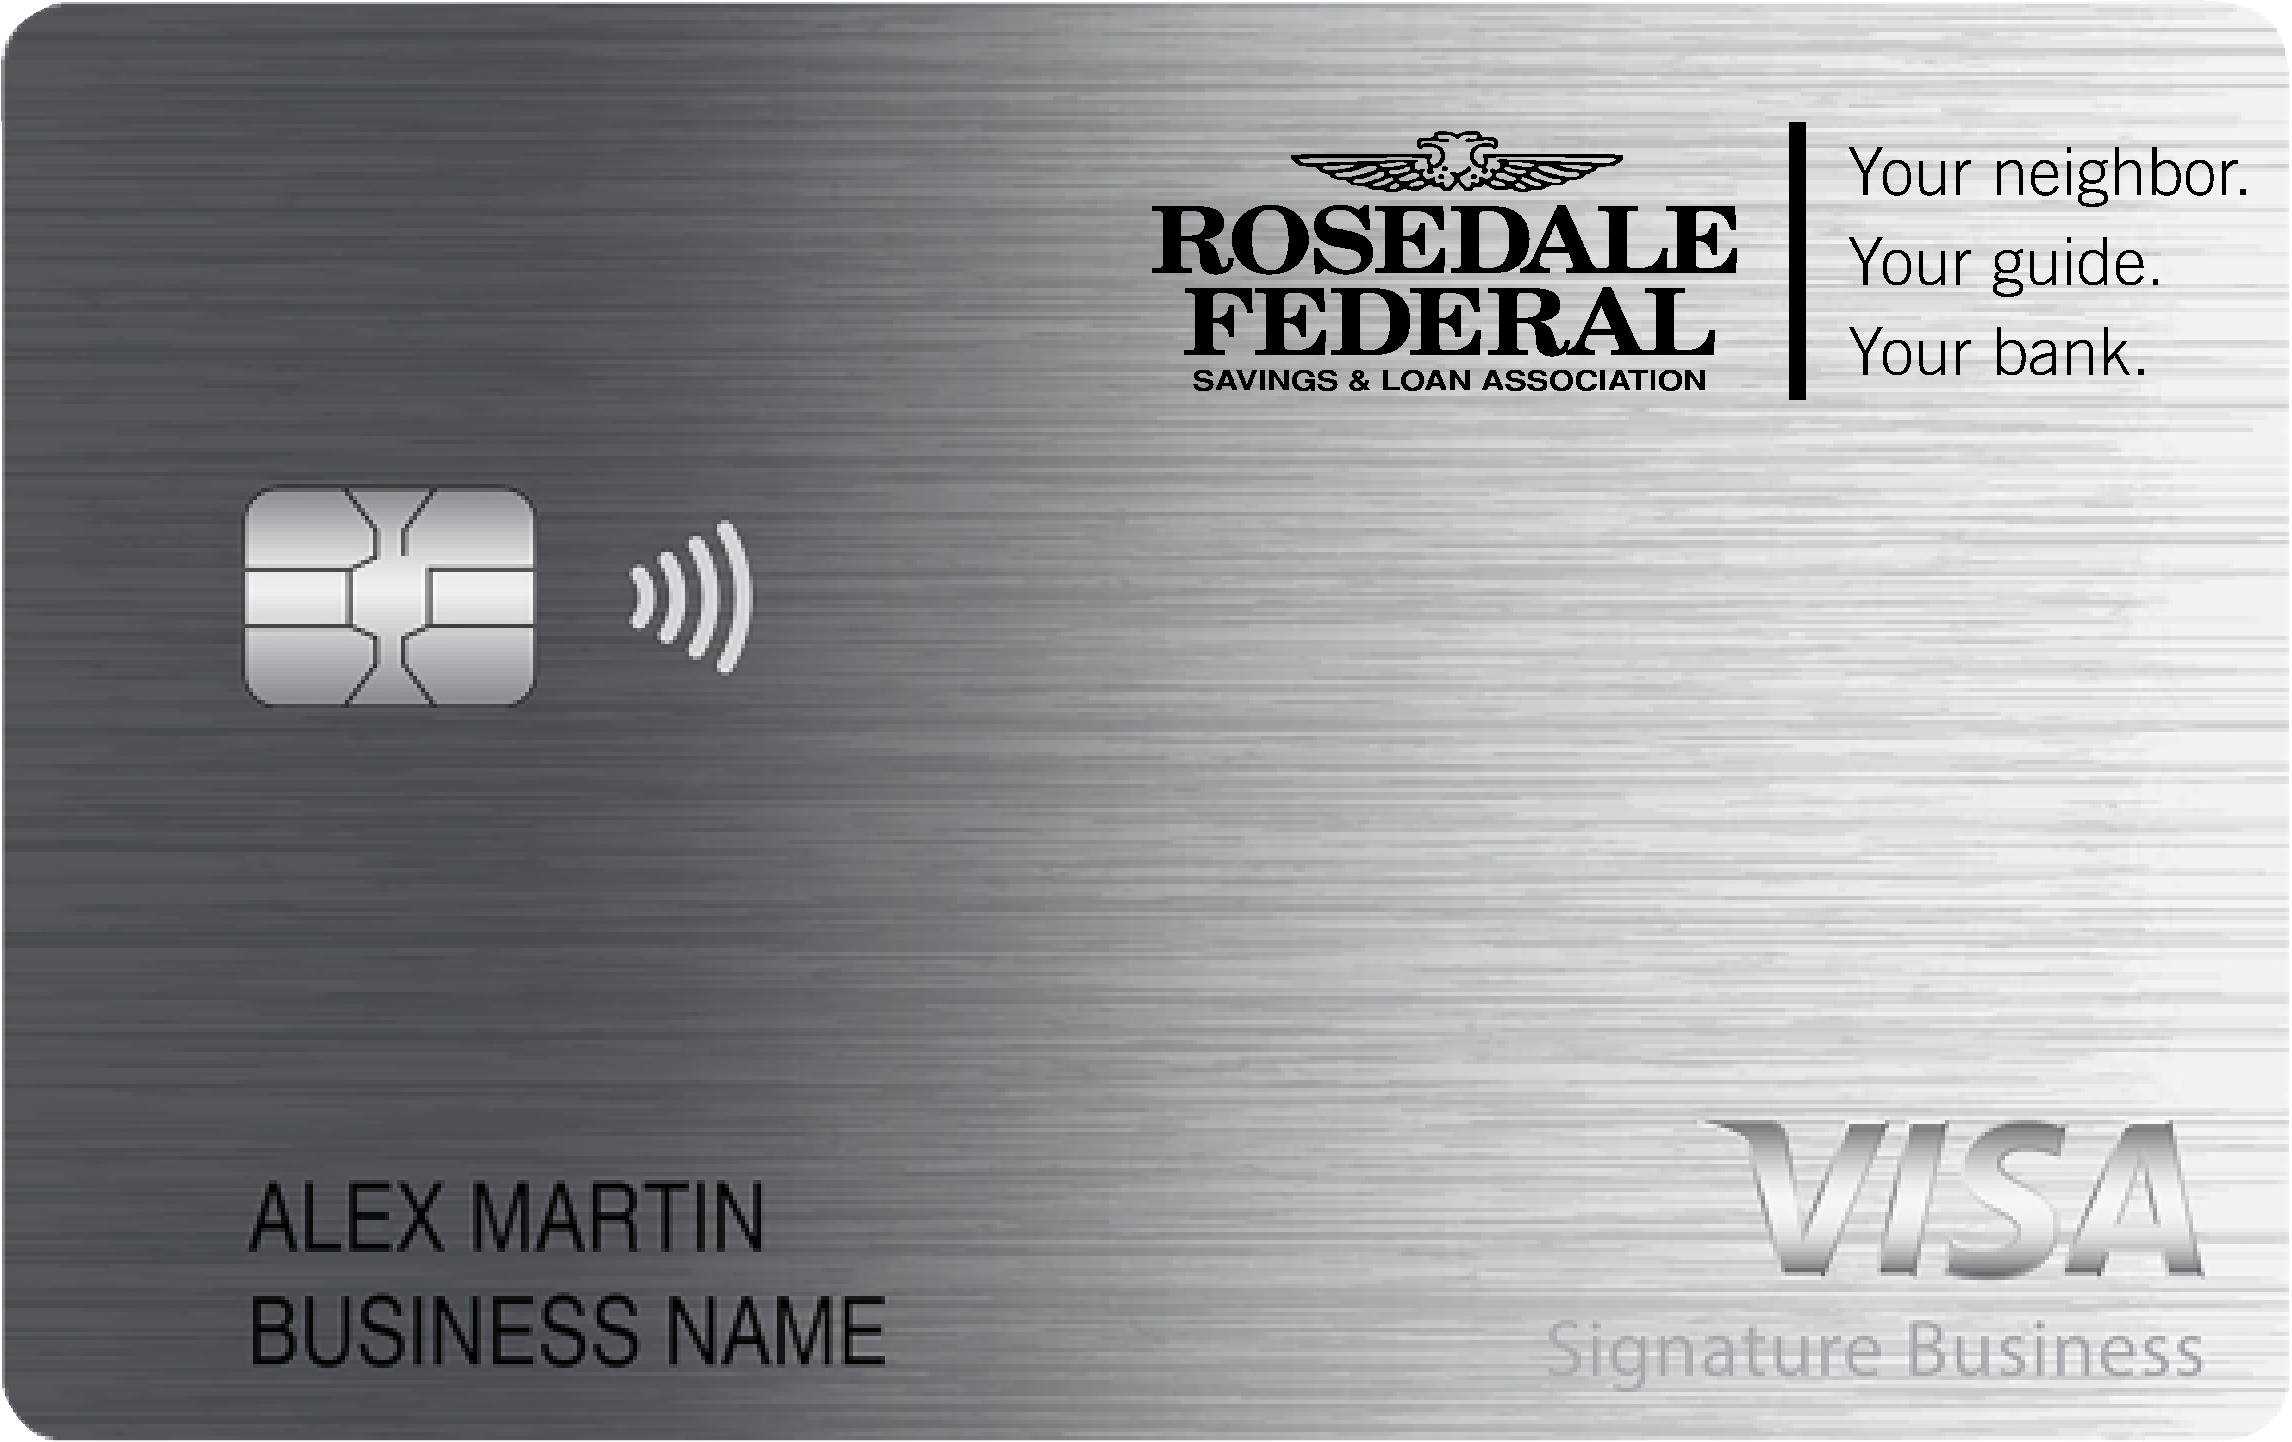 Rosedale Federal S&L Association Smart Business Rewards Card